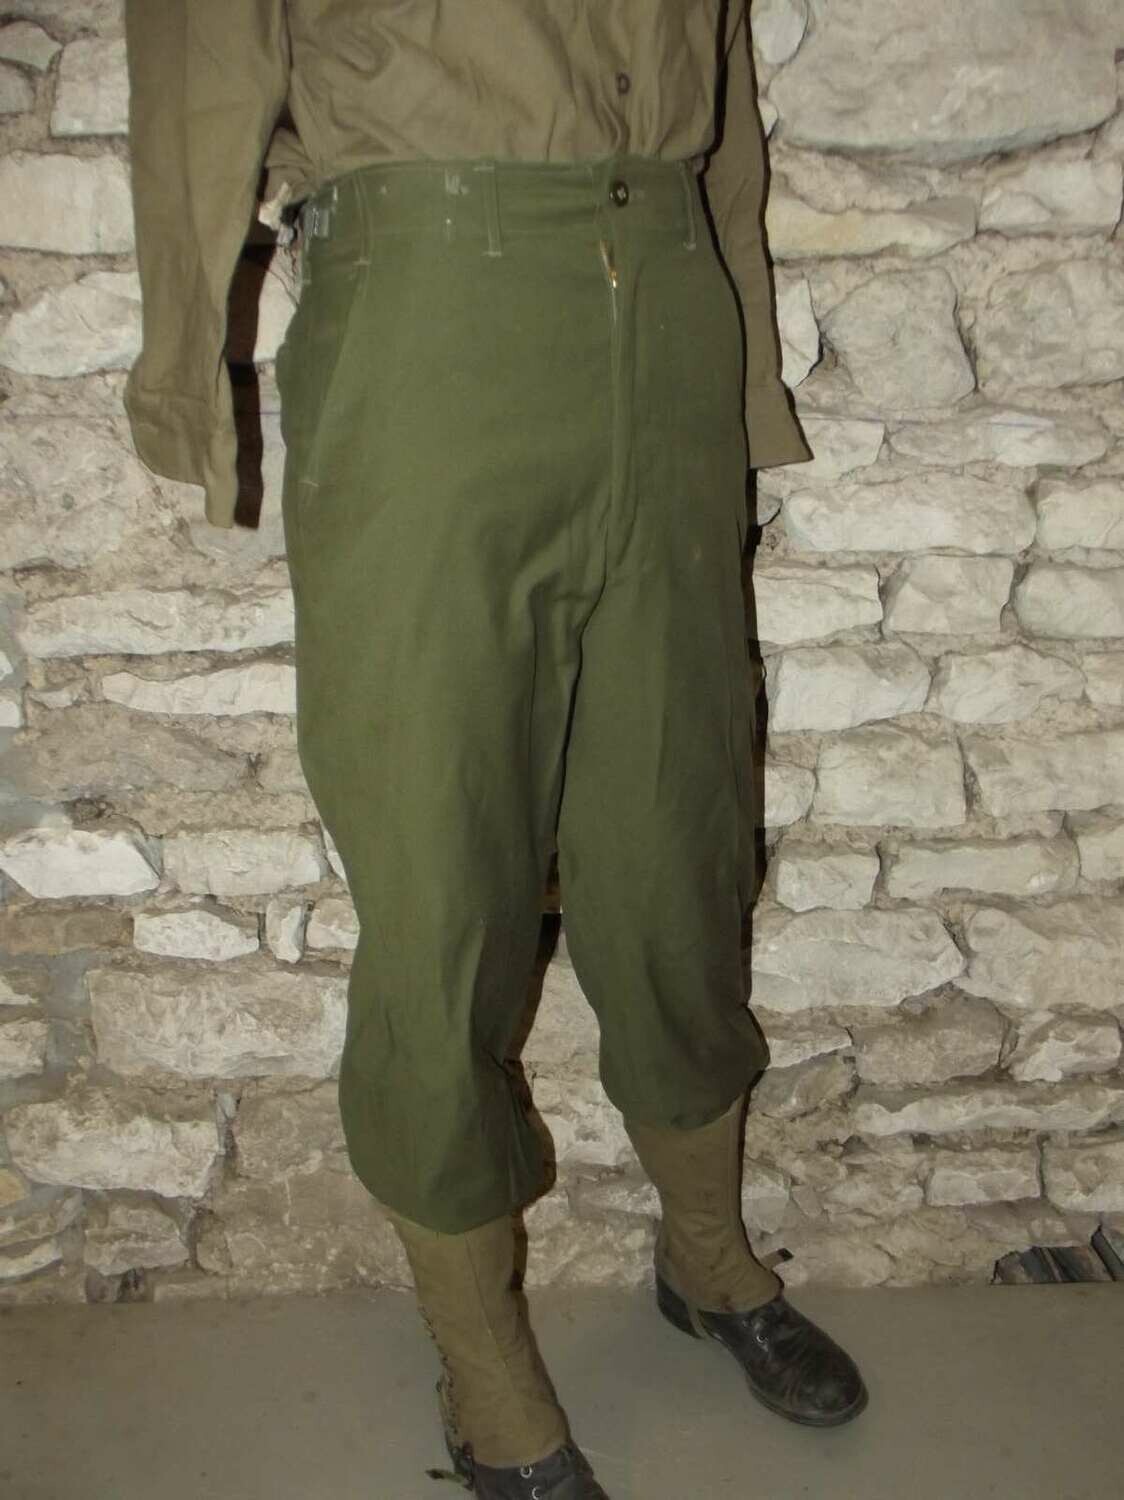 Pantalon laine US OG-108 Réenactors ww2 Guerre de Corée. Taille 36 Europe.